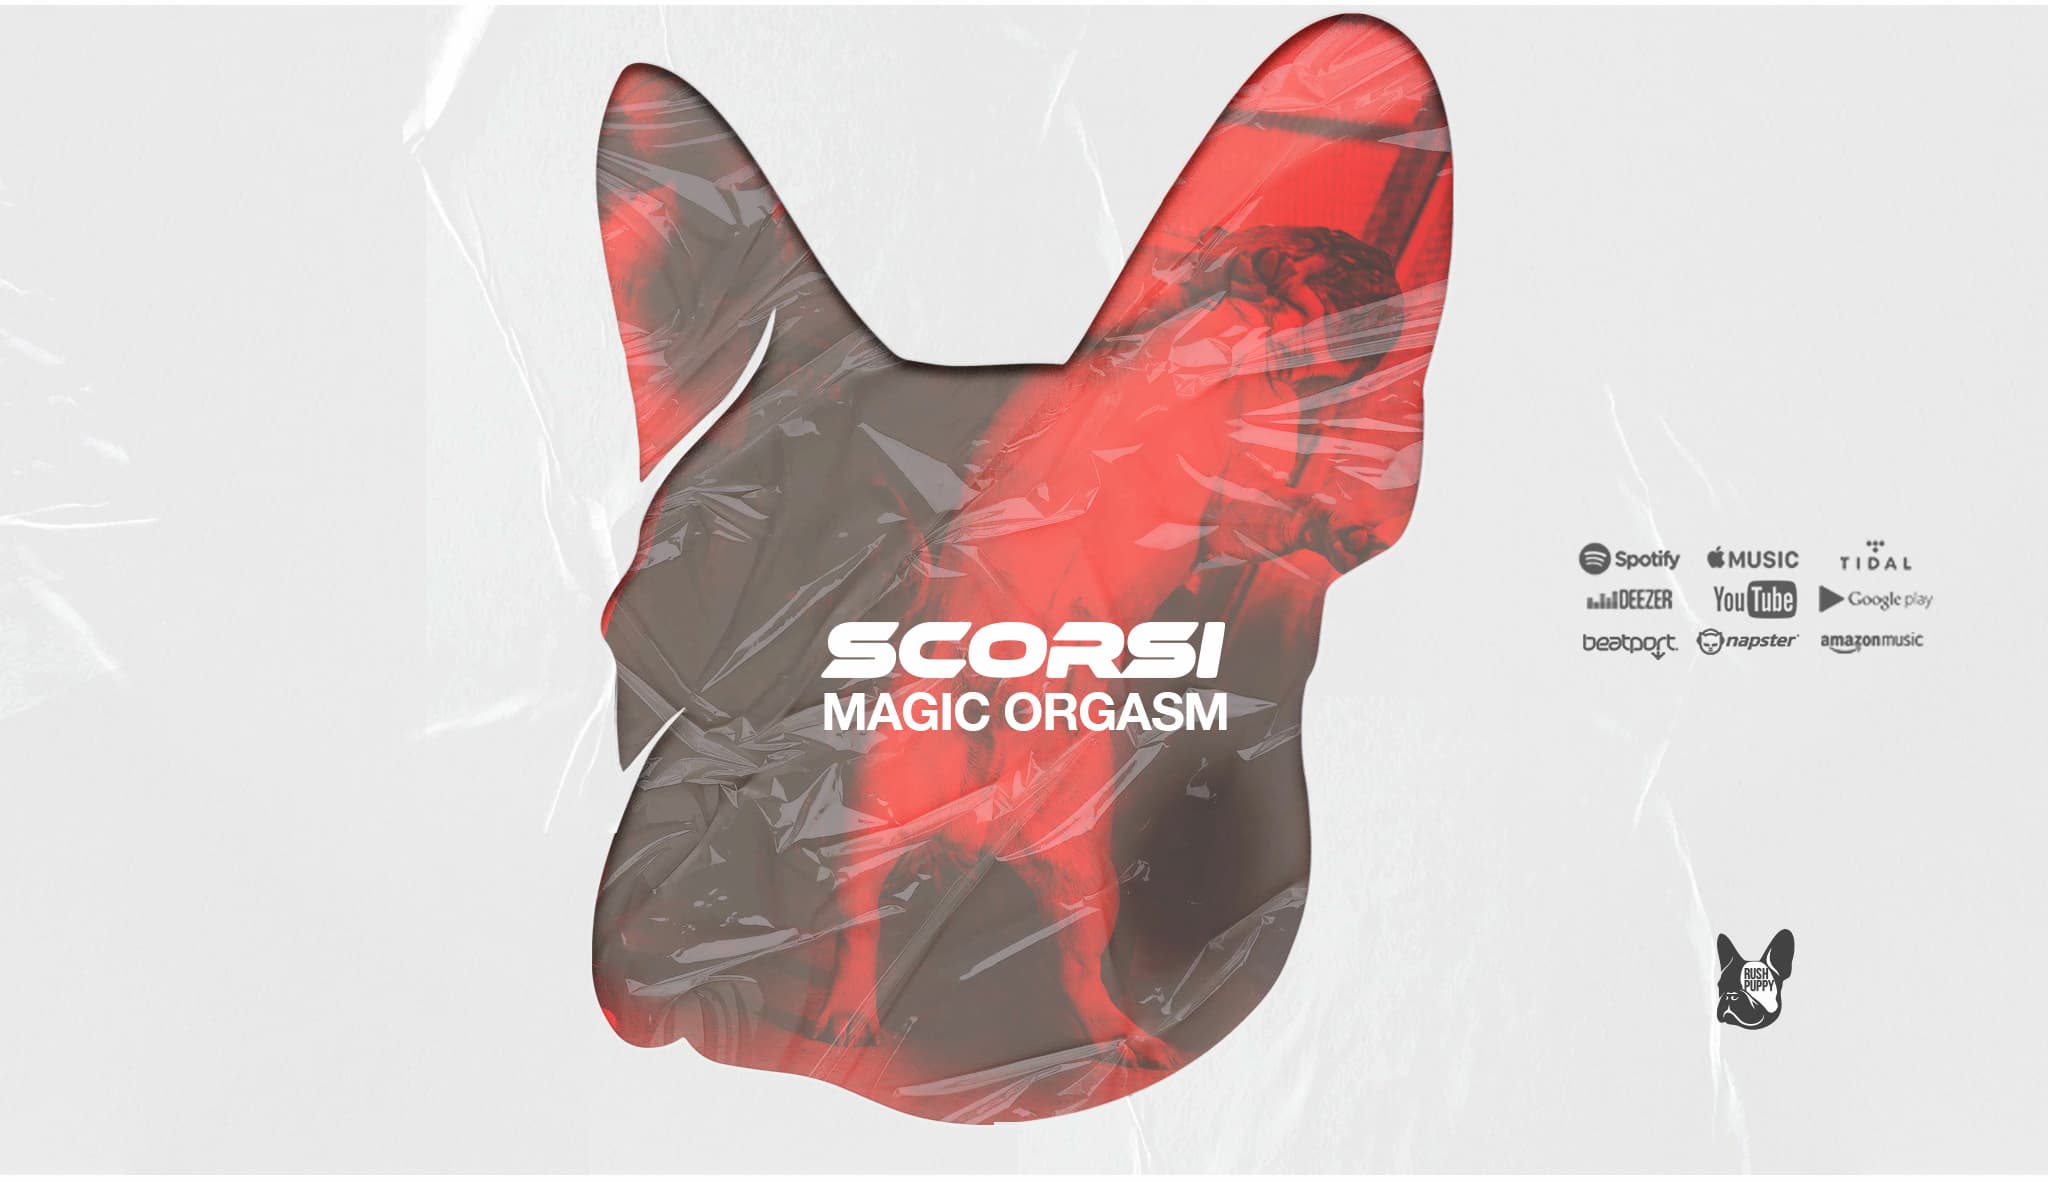 Scorsi lança "Magic Orgasm" pela sua própria label, RushPuppy Records